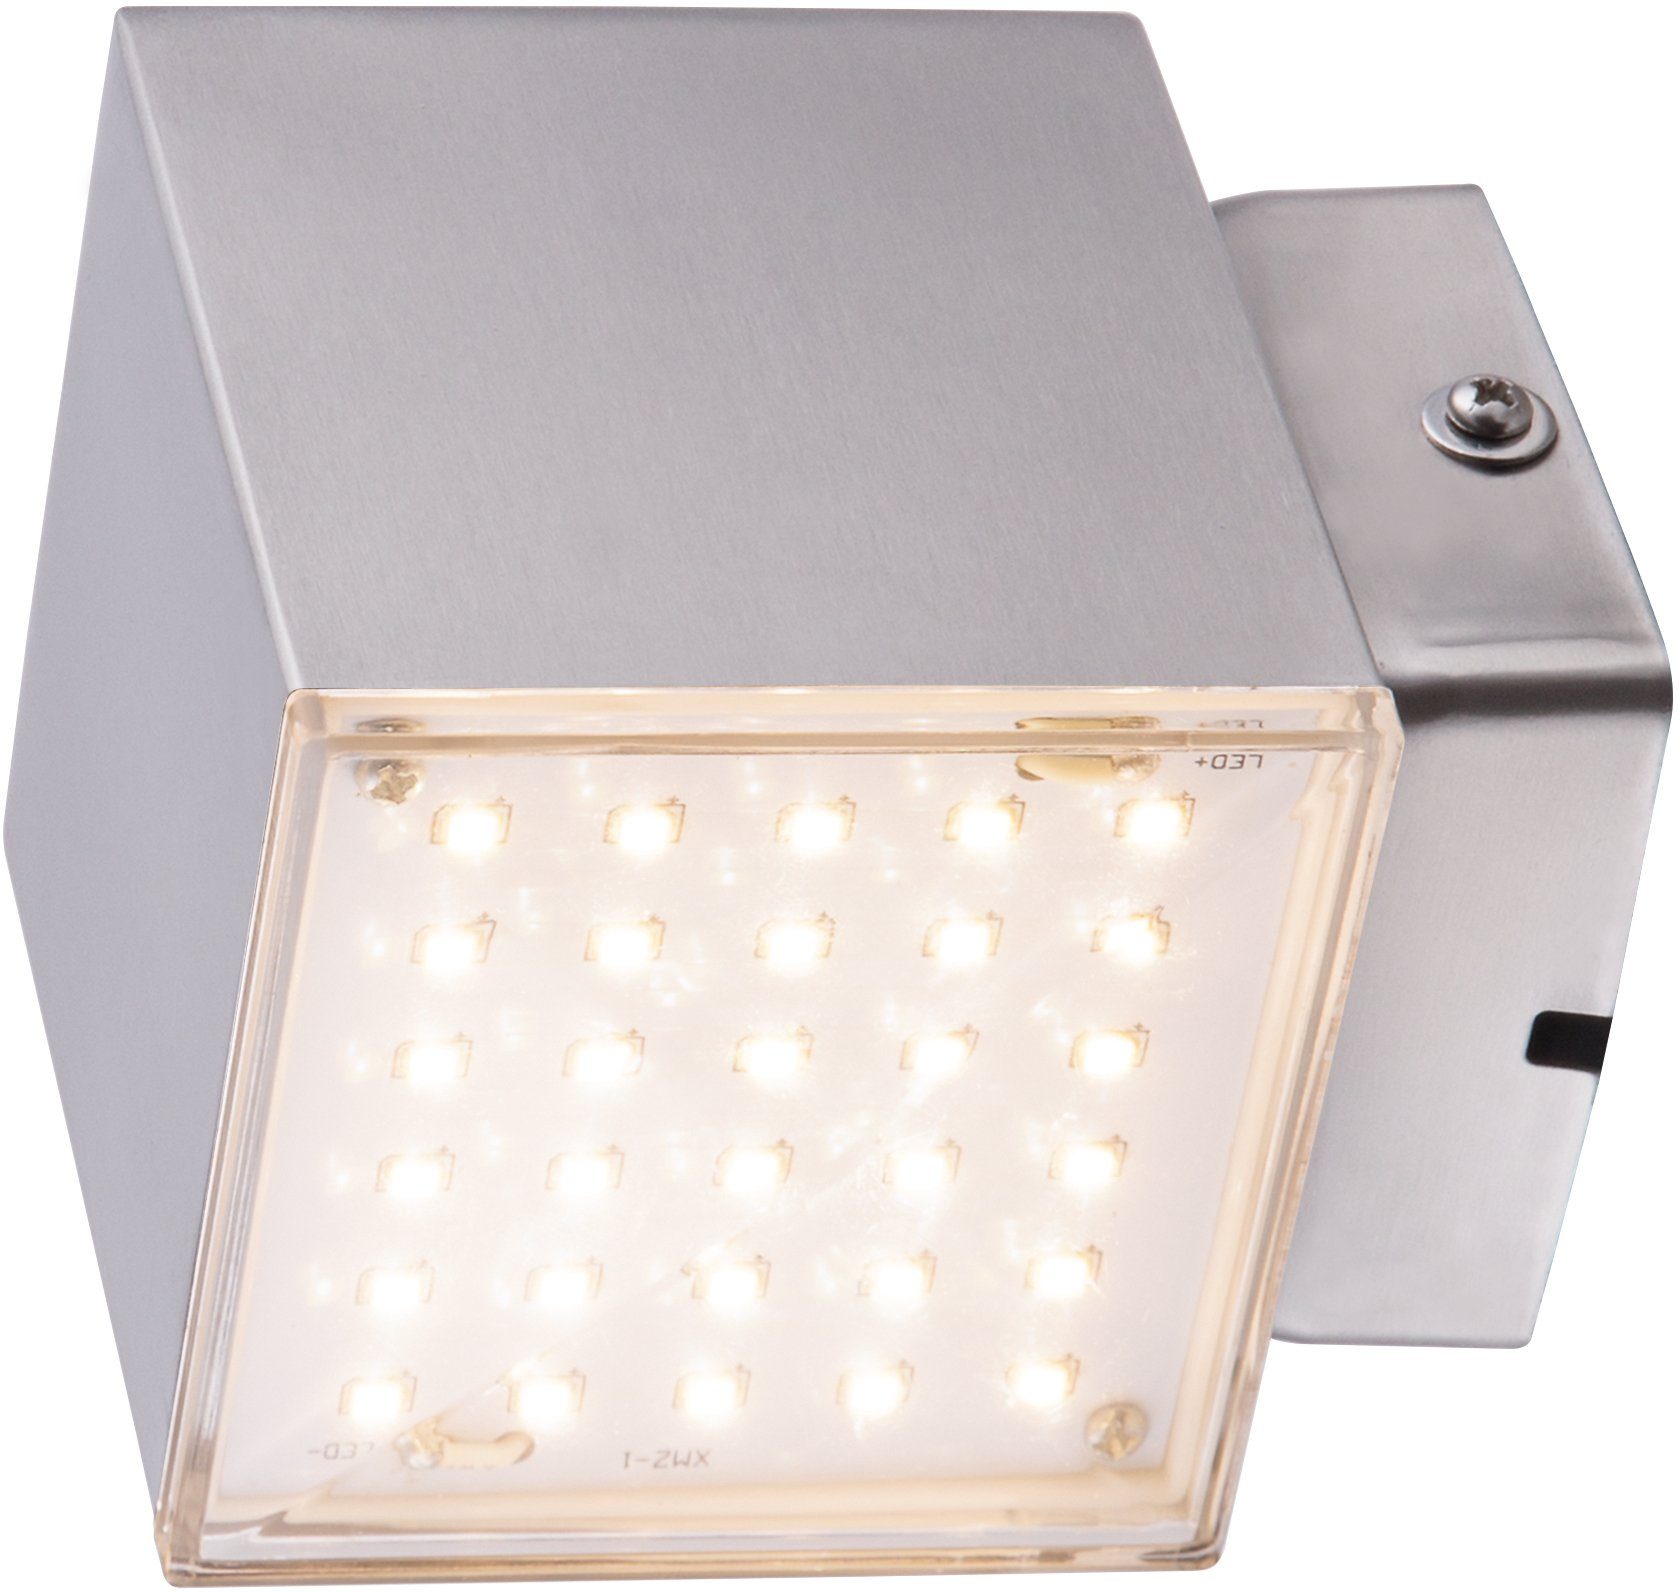 Auswahl HEITRONIC LED Wandleuchte Kubus 2, fest Wandlampe,Außenlampe,indirekter Lichtaustritt LED nach integriert, Edelstahl unten,aus